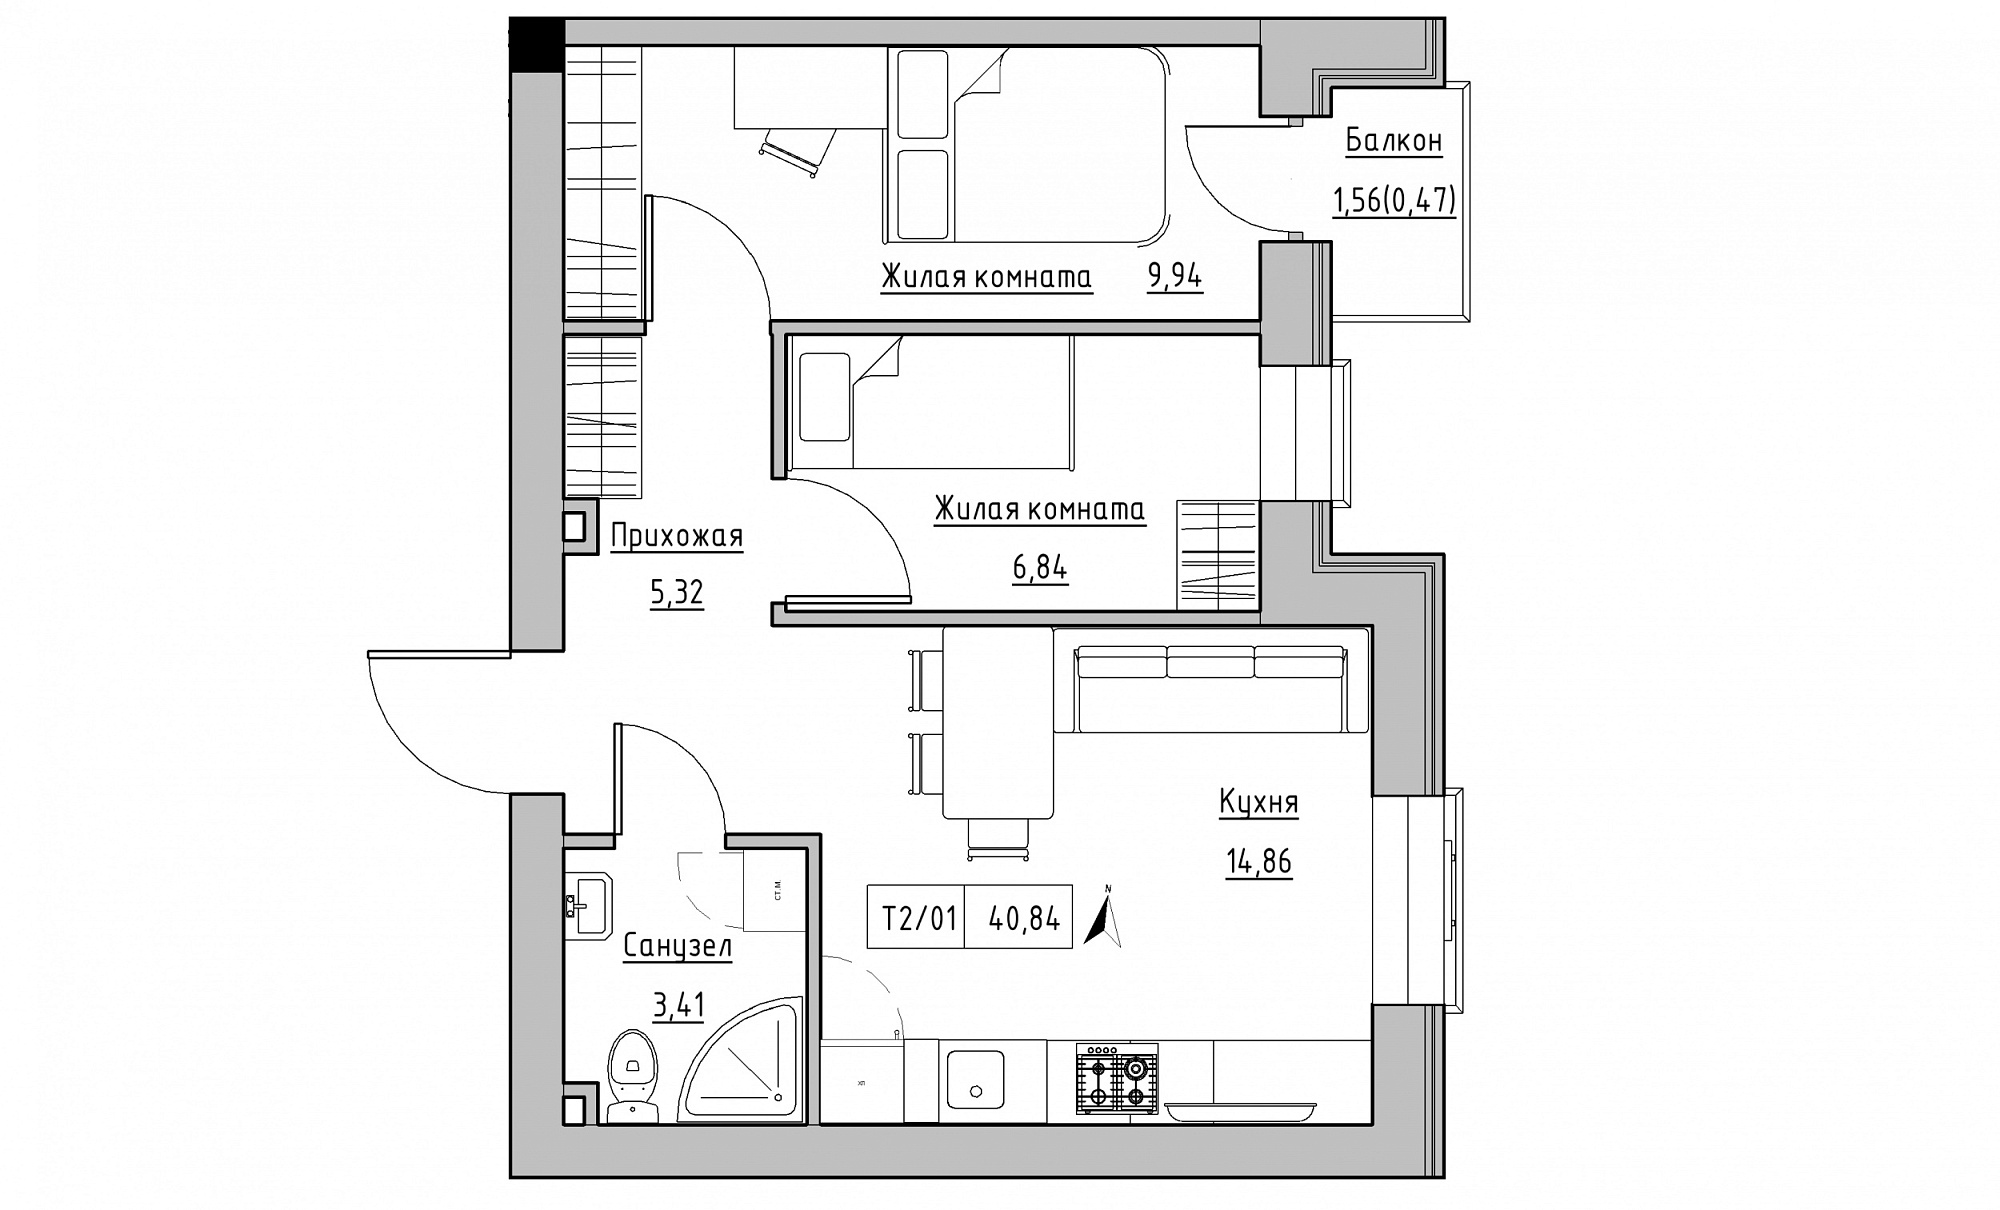 Планування 2-к квартира площею 40.84м2, KS-015-03/0006.